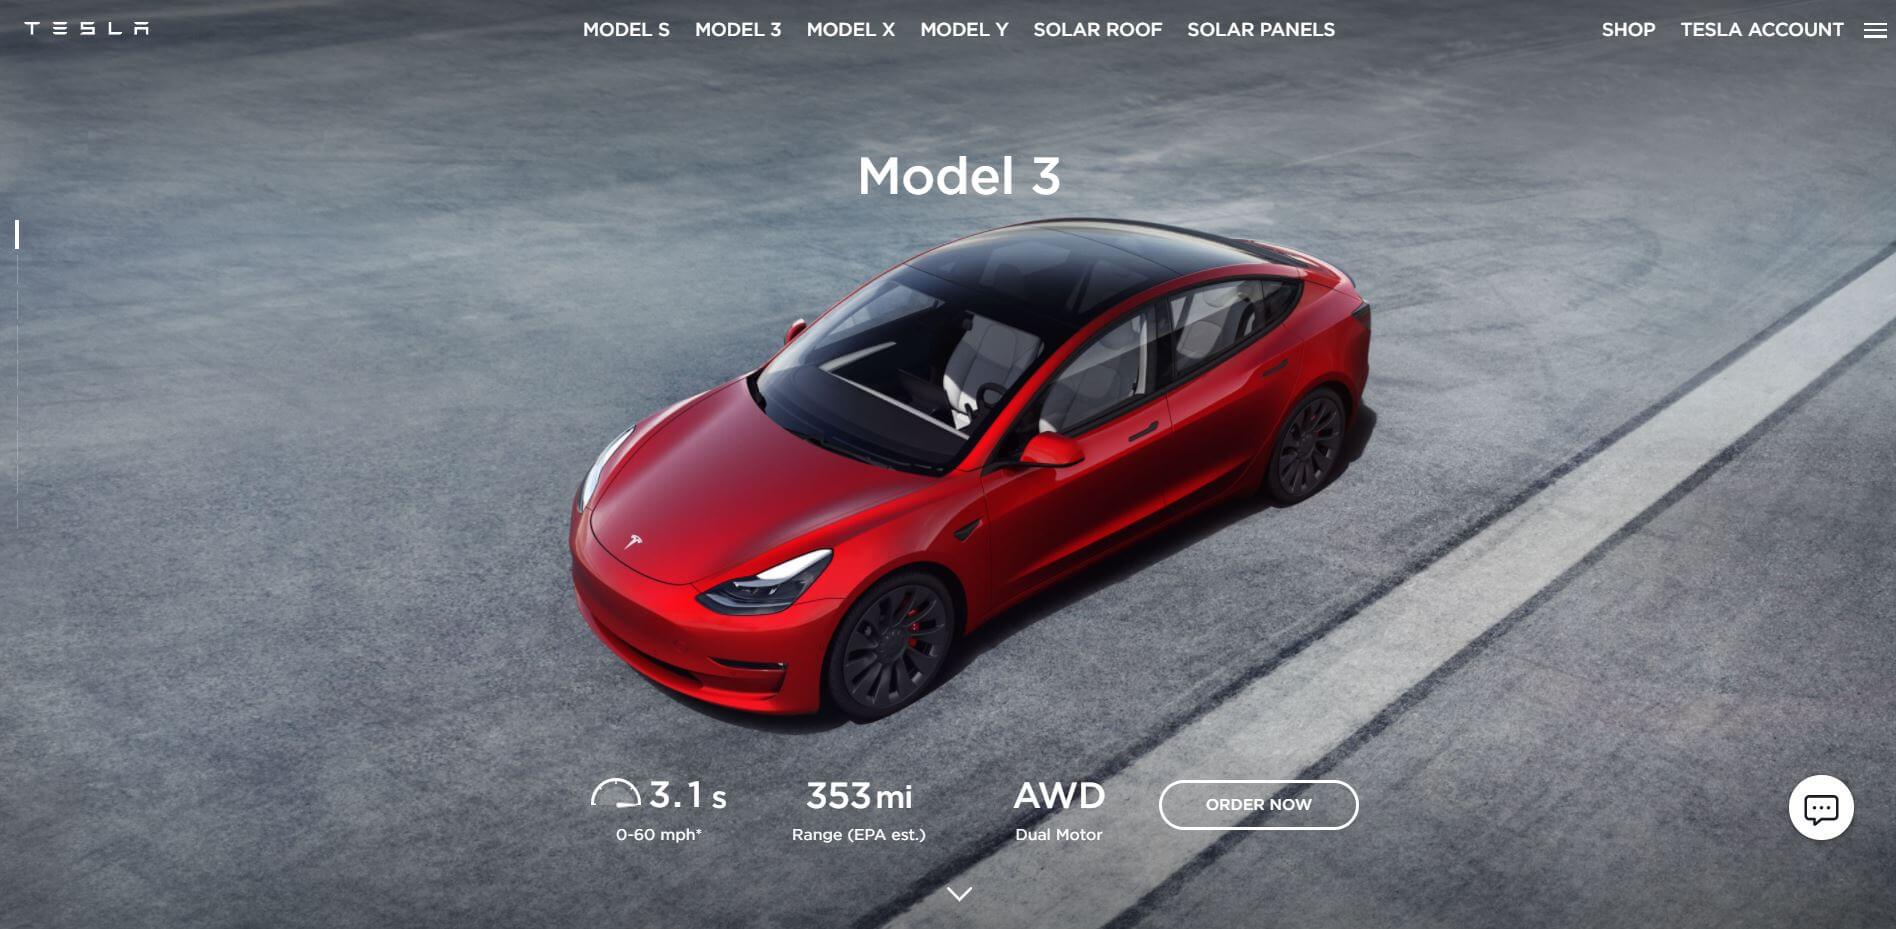 Tesla's website on Drupal